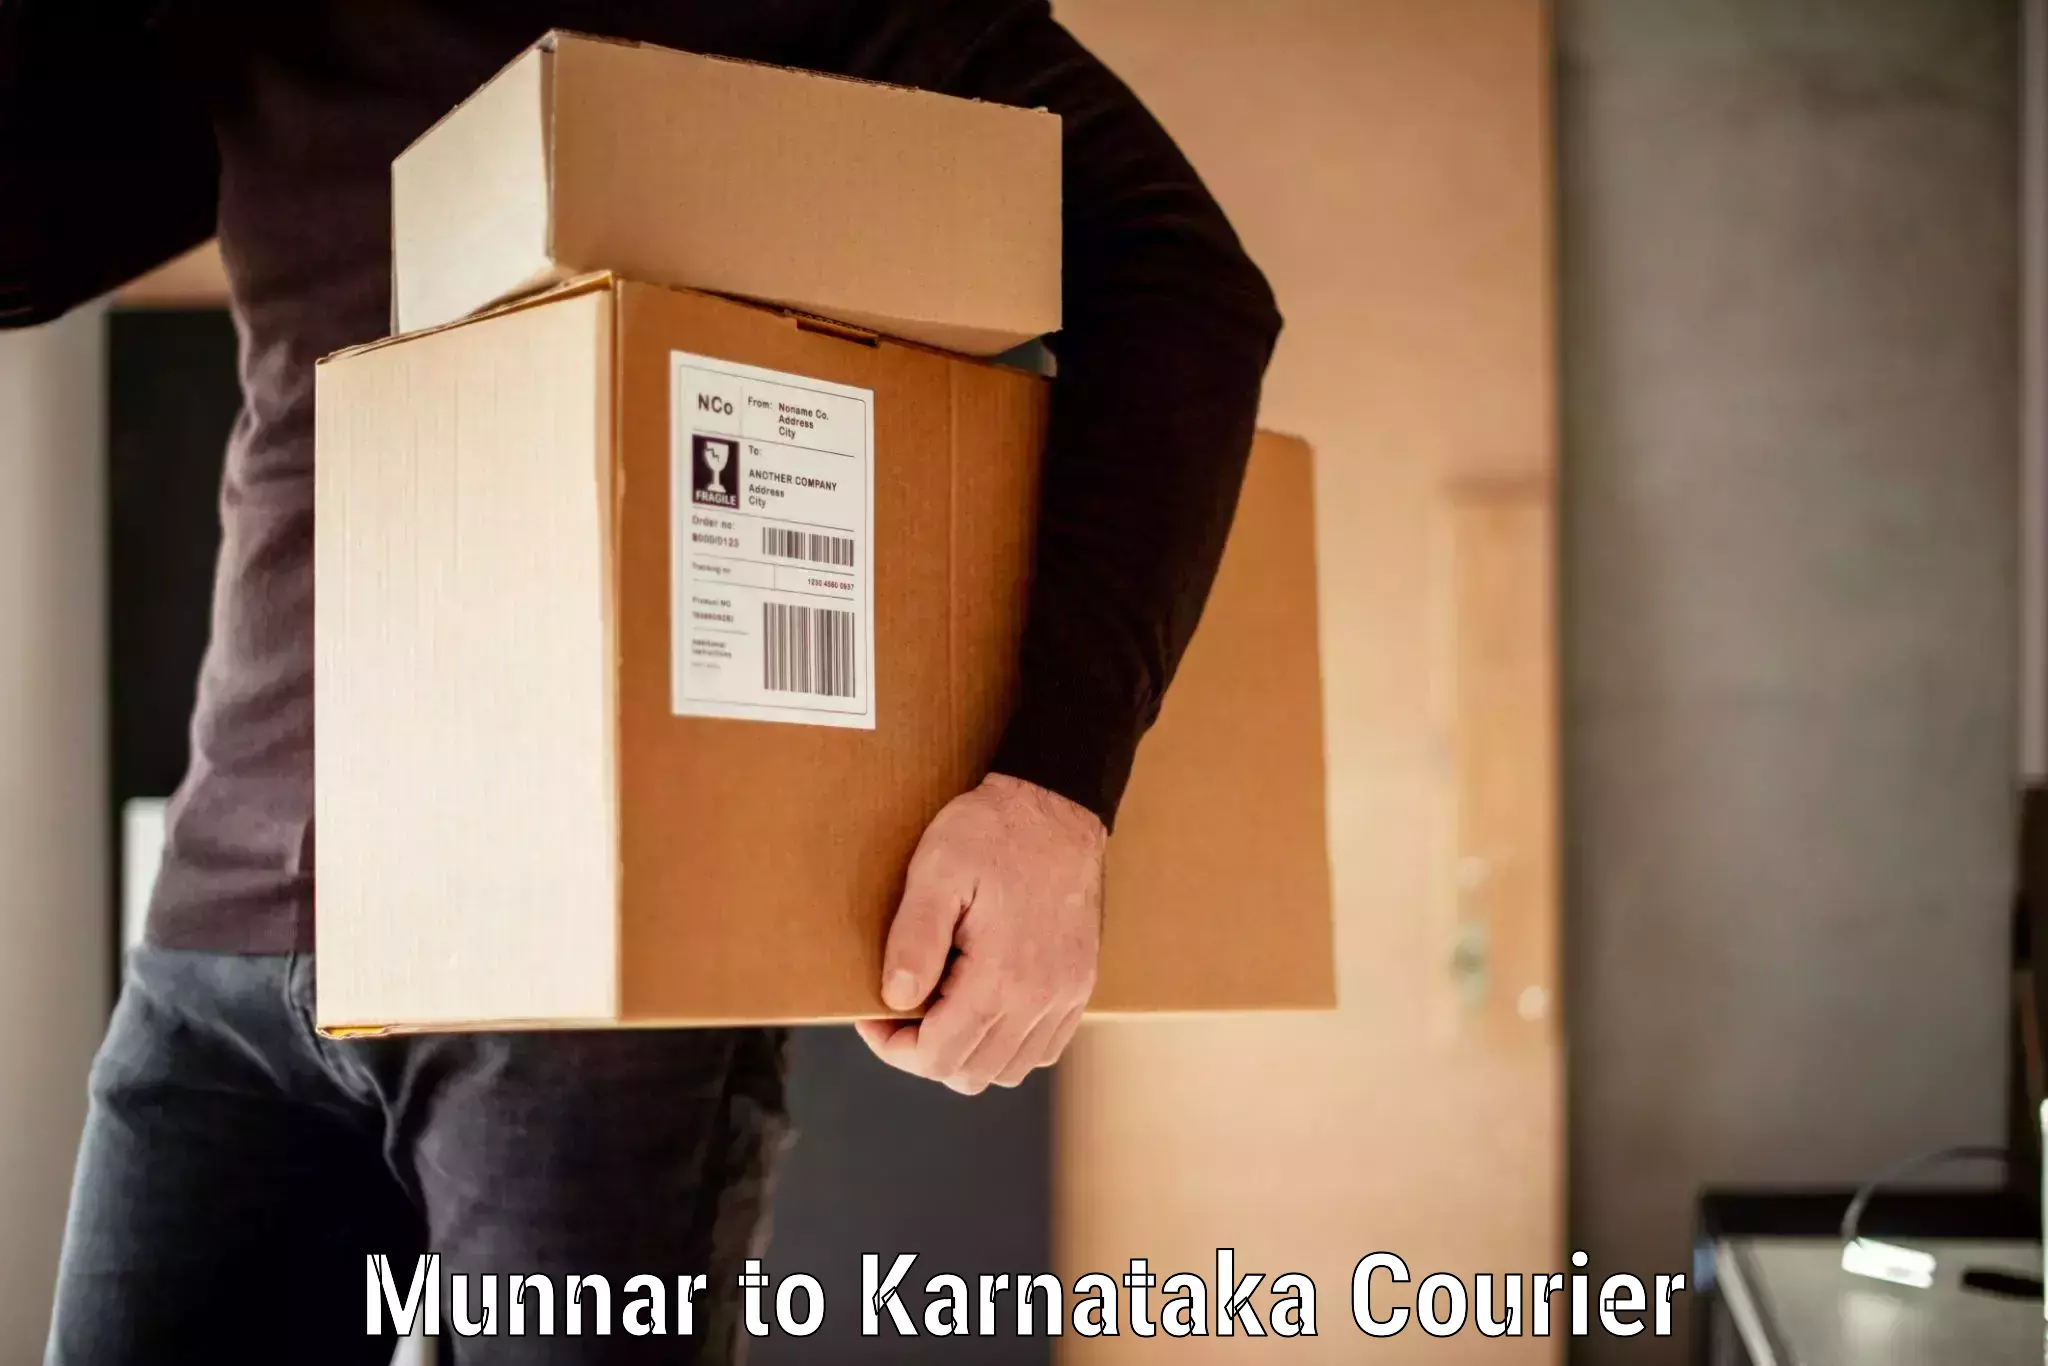 Baggage transport cost Munnar to Karnataka